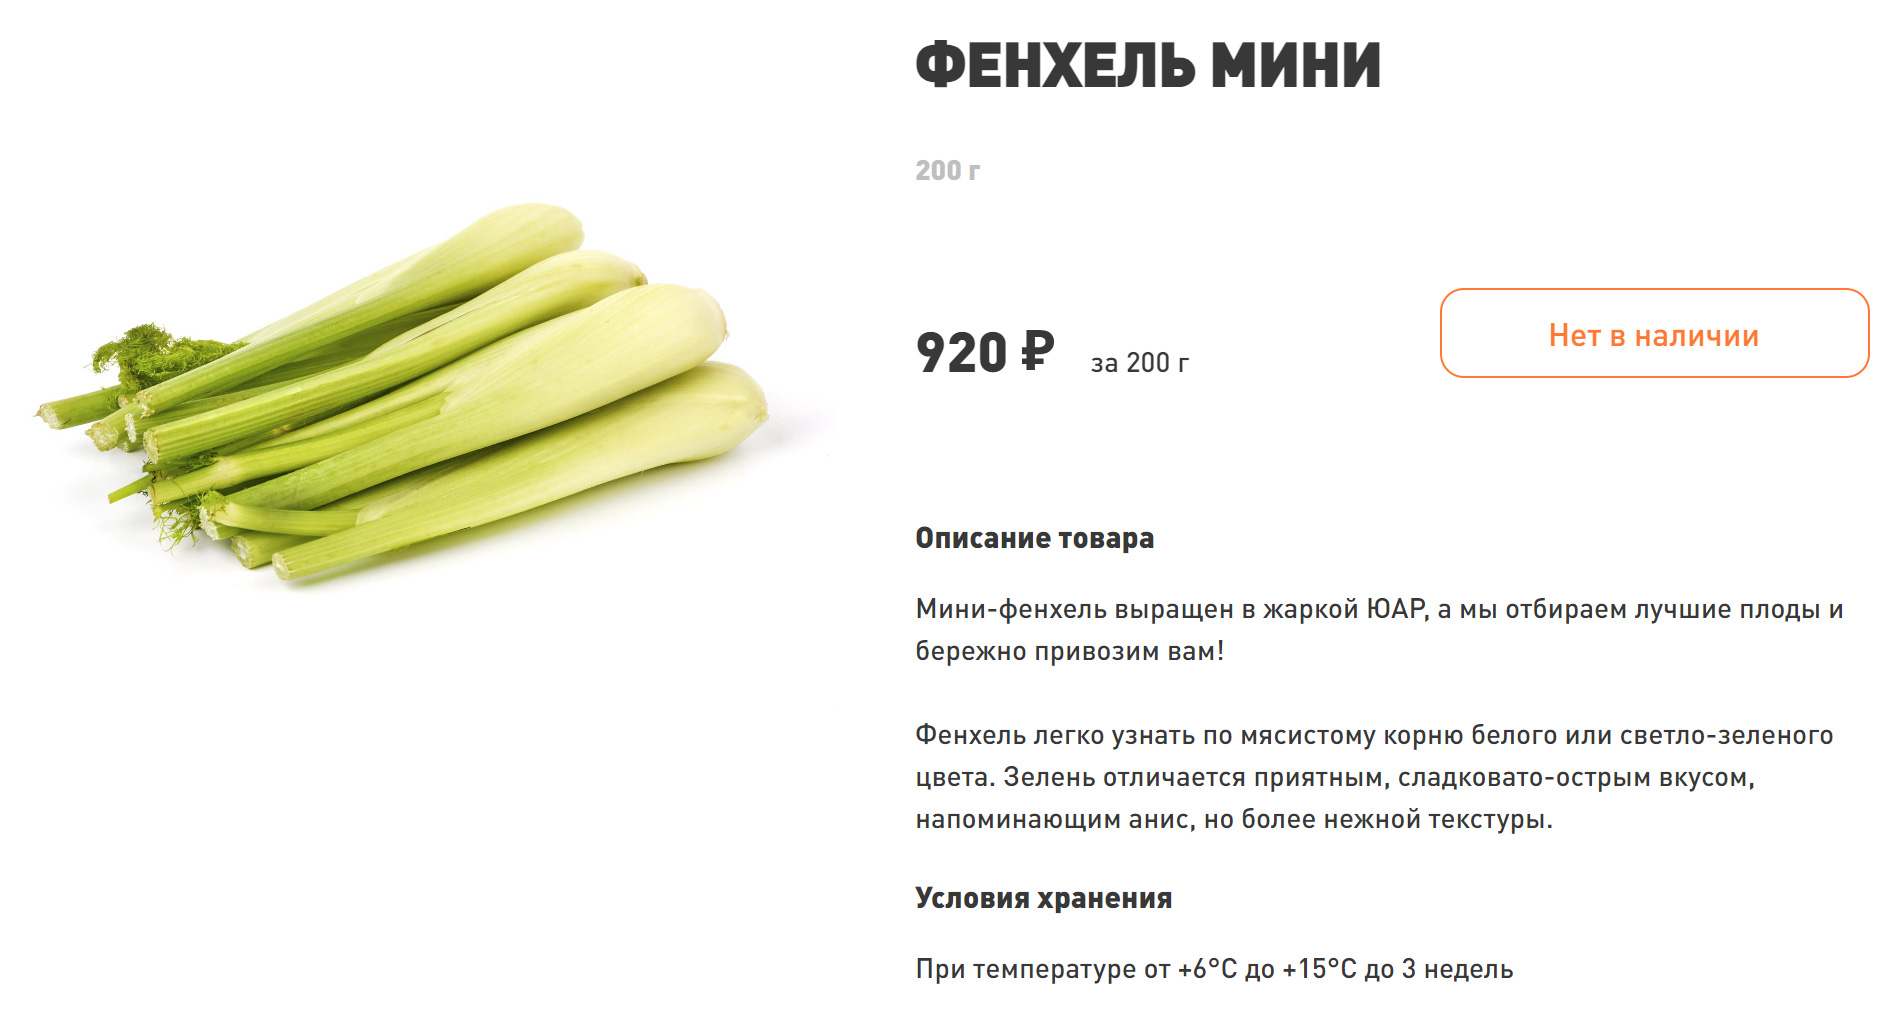 В апреле сезон фенхеля еще не начался, поэтому в магазинах его не найти. Источник: ecomarket.ru